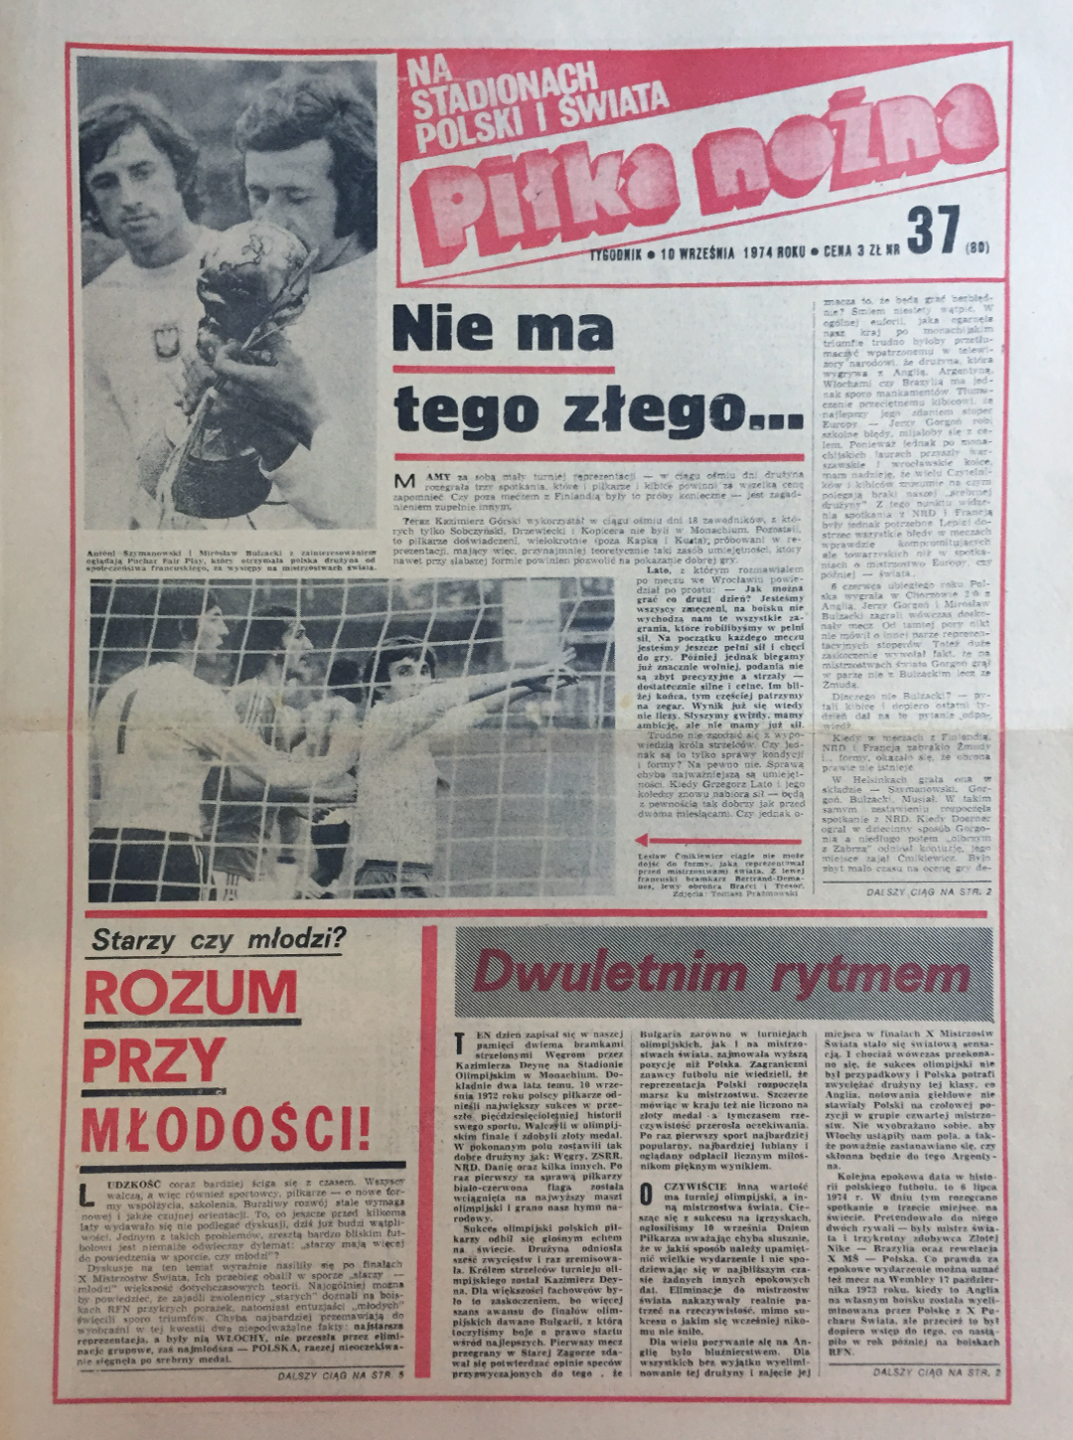 Okładka piłki nożnej po meczu Polska - Francja (07.09.1974)